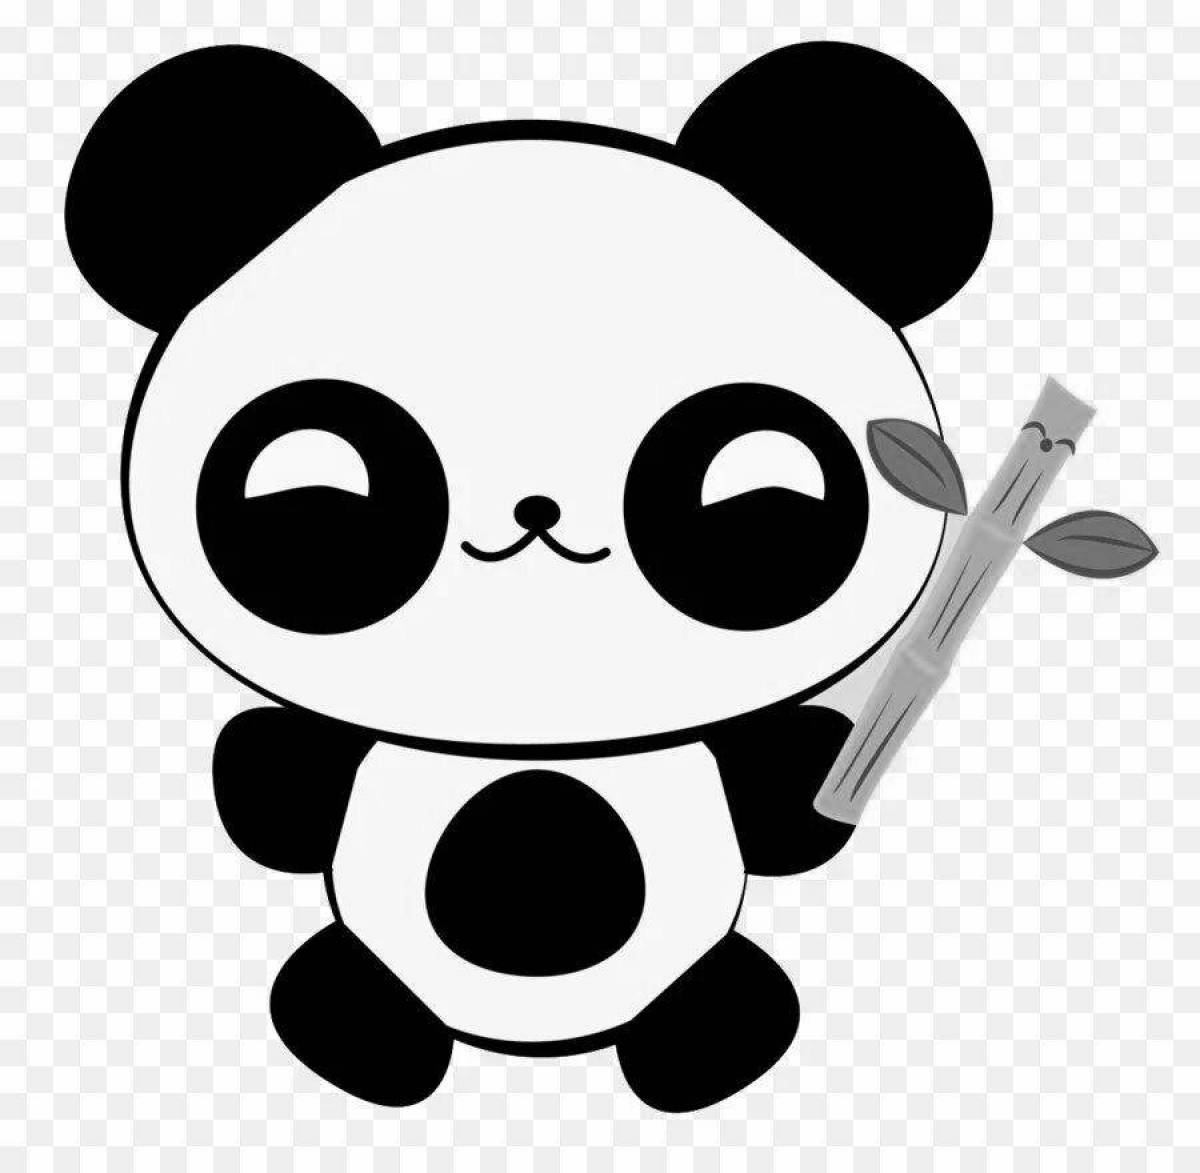 Fluffy cute panda coloring book